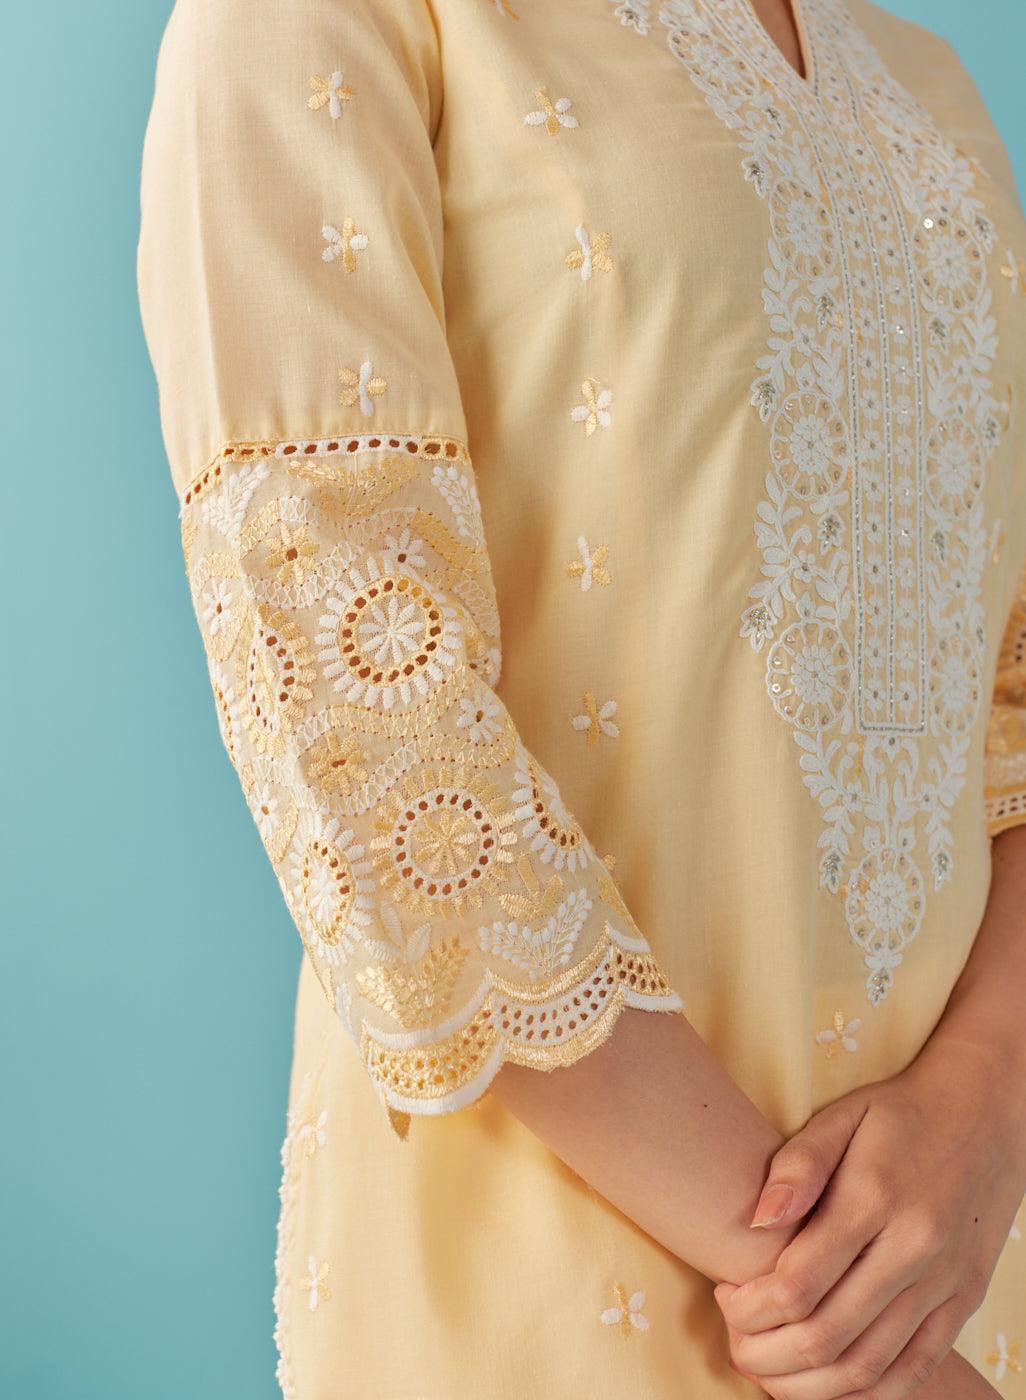 Lemon Yellow Knee Length Kurti with Embroidered Sleeve - Lakshita